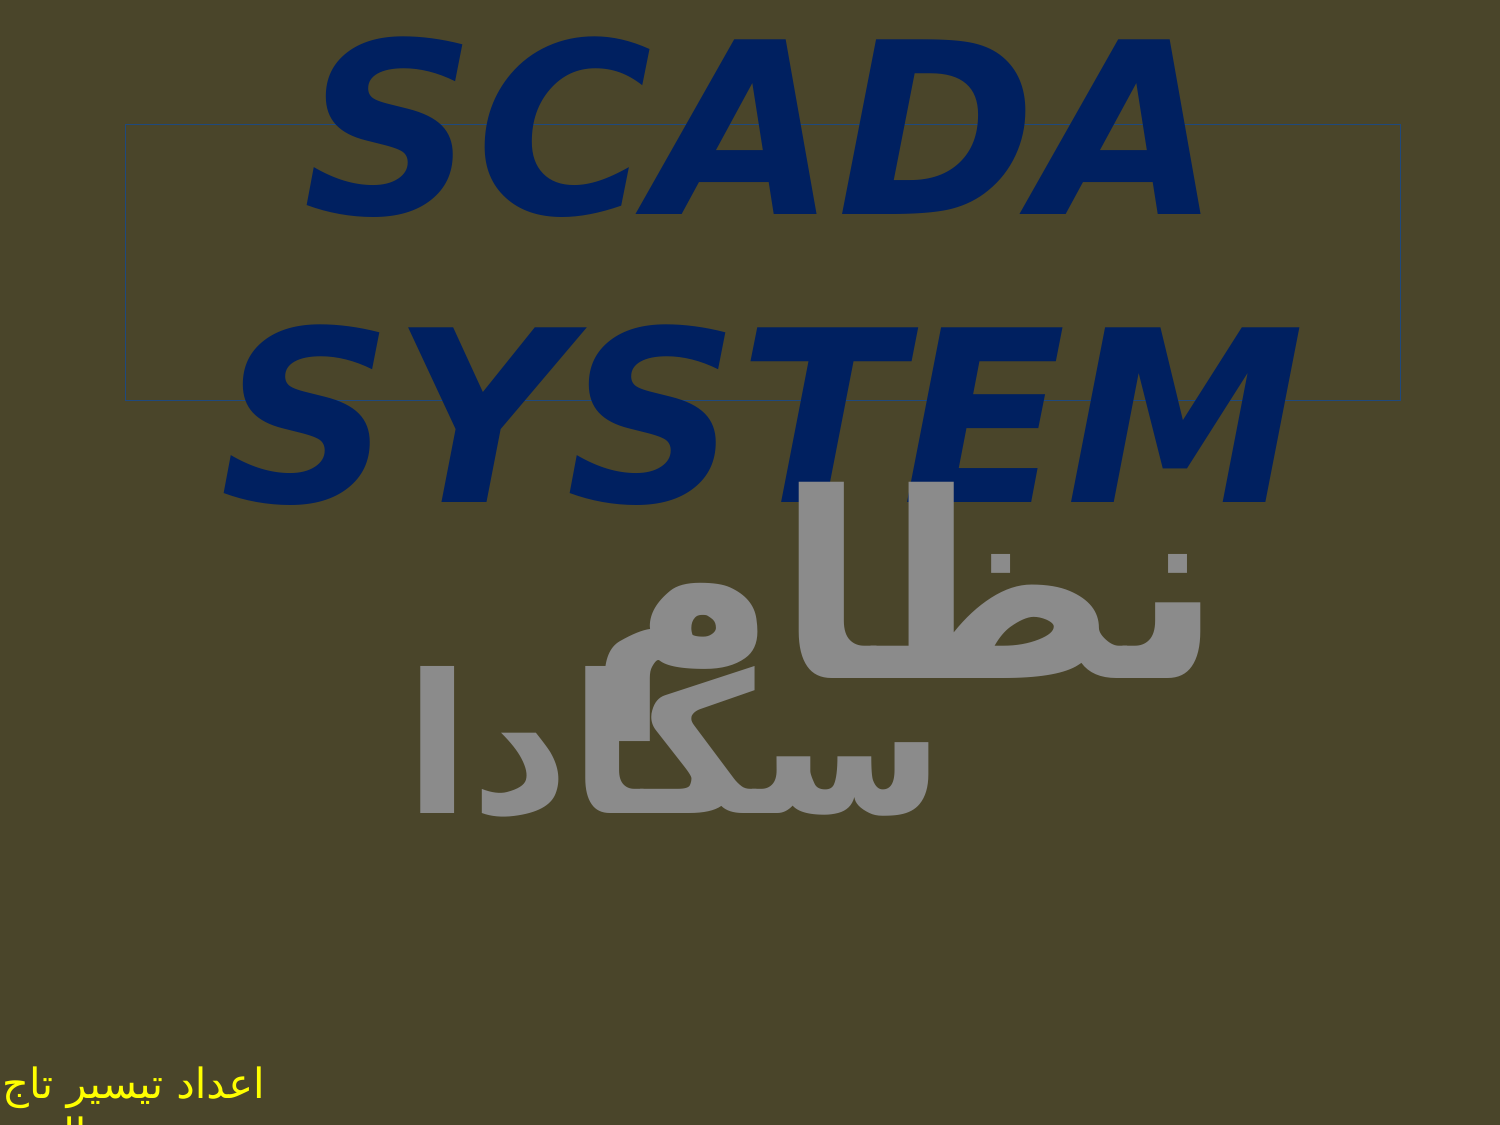 تنزيل وتحميل كتاِب scada system pdf برابط مباشر مجاناً